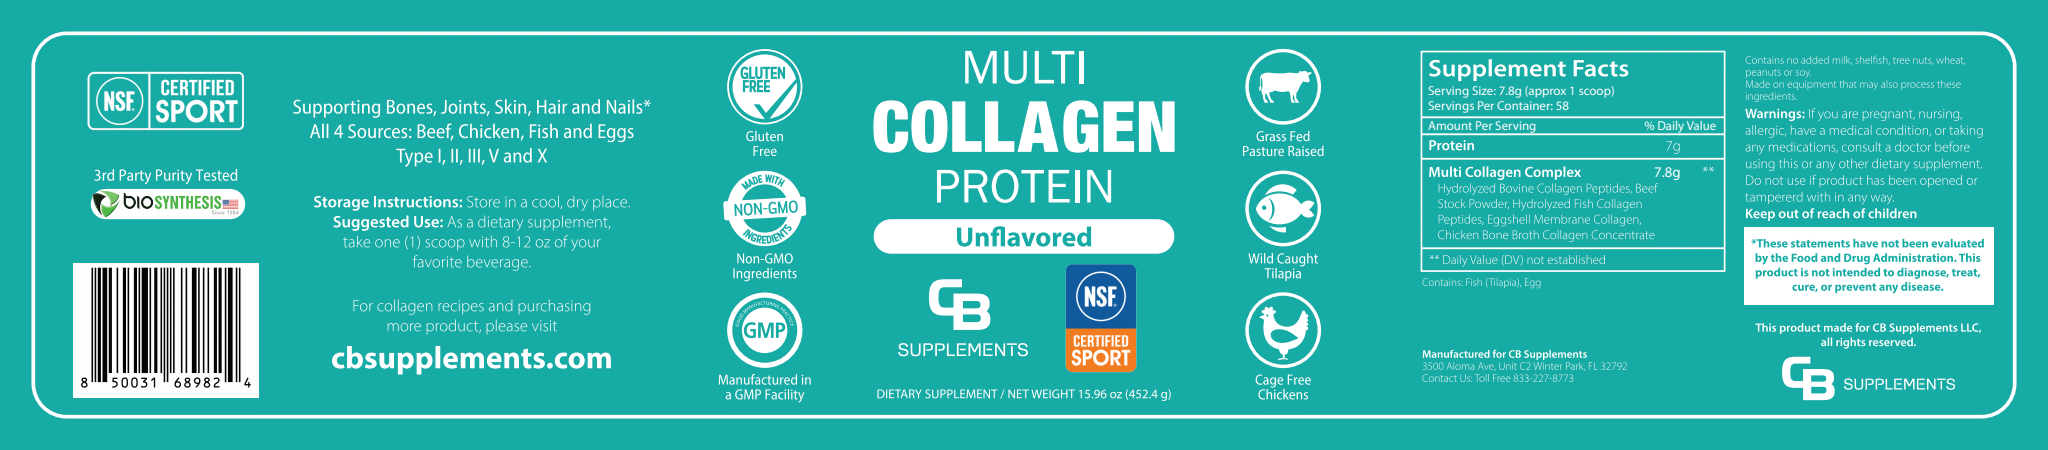 NSF Unflavored Multi Collagen Protein Powder - Label